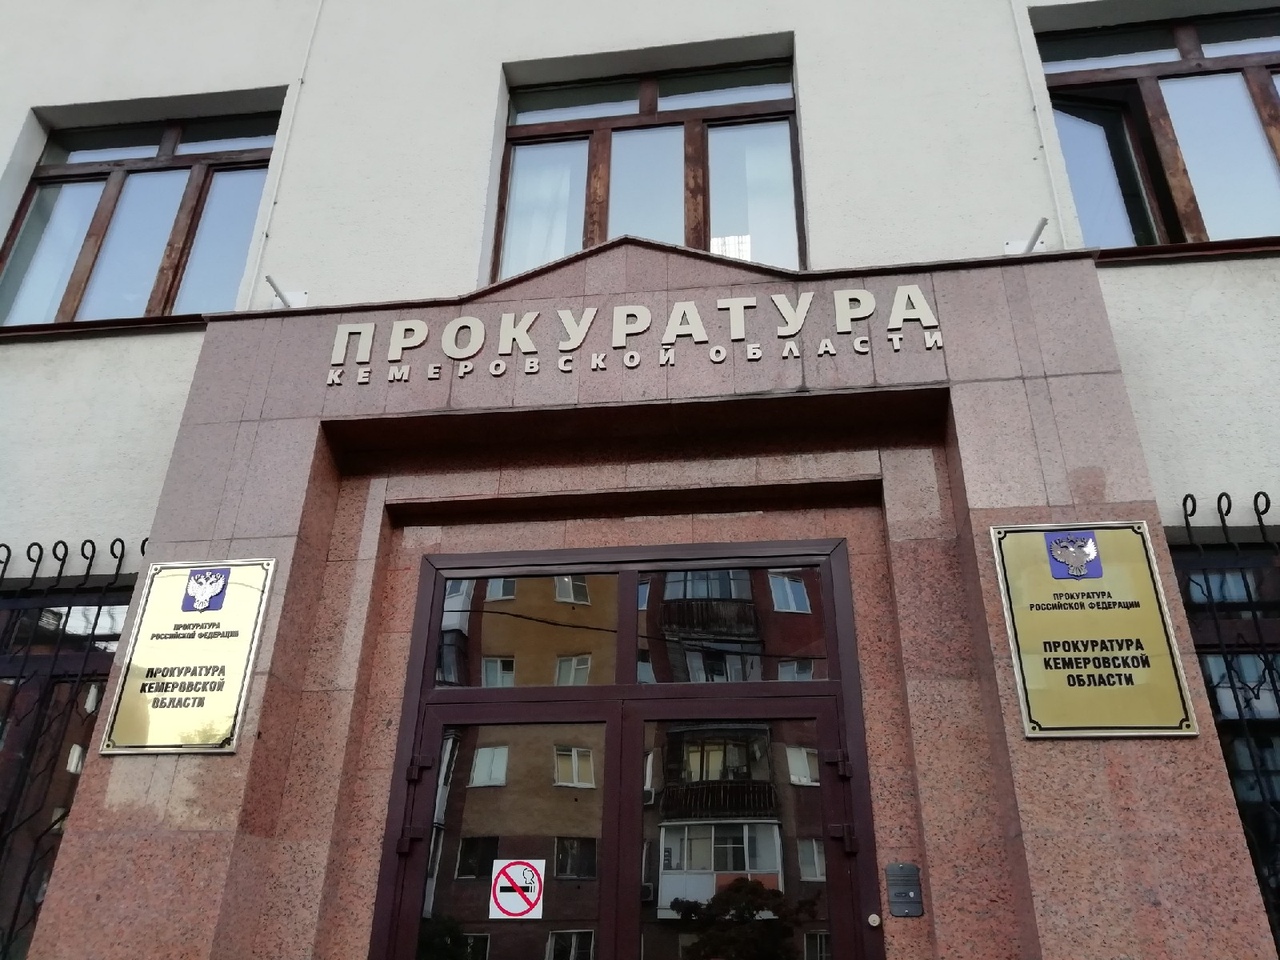 Прокуратура Кемеровской области помогла в получении зарплаты сотрудникам охранного предприятия